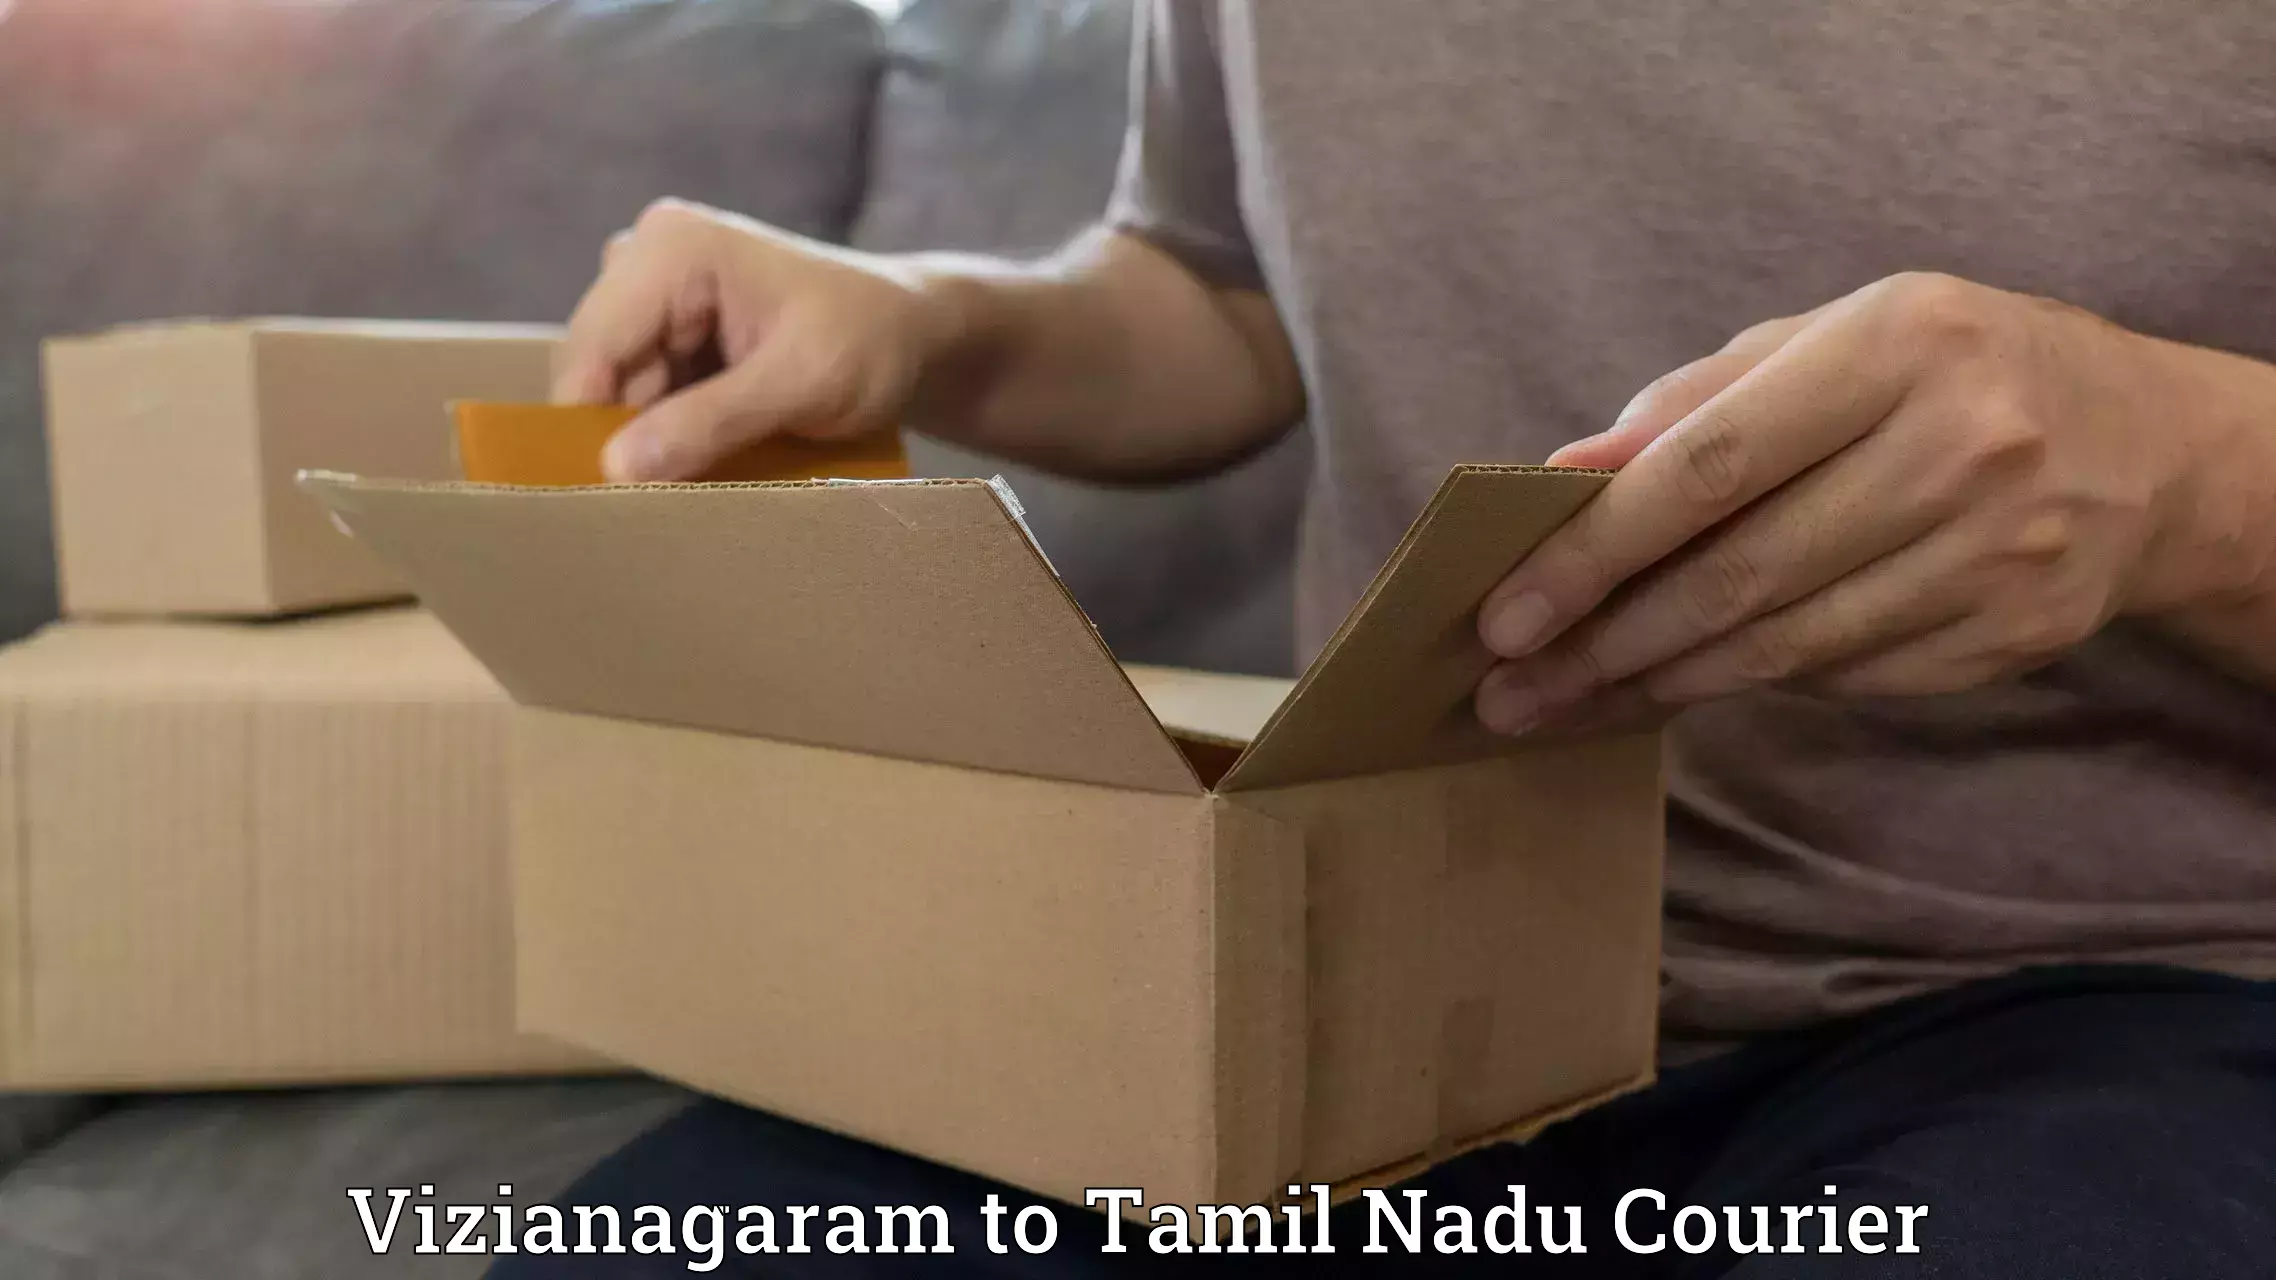 Courier membership in Vizianagaram to Ramanathapuram